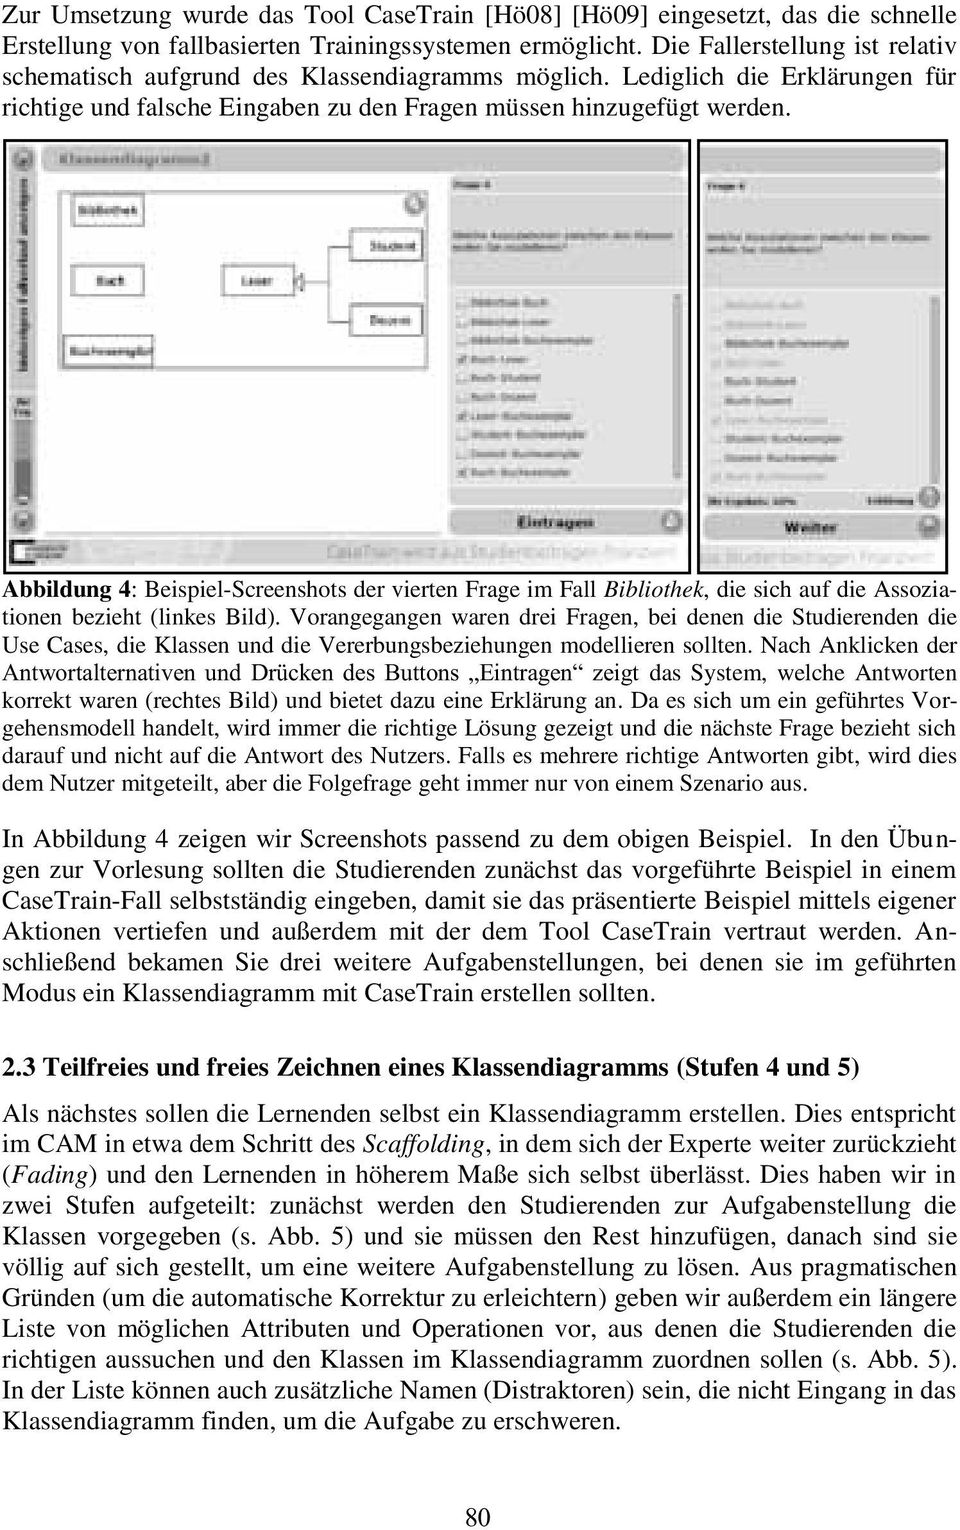 Abbildung 4: Beispiel-Screenshots der vierten Frage im Fall Bibliothek, die sich auf die Assoziationen bezieht (linkes Bild).